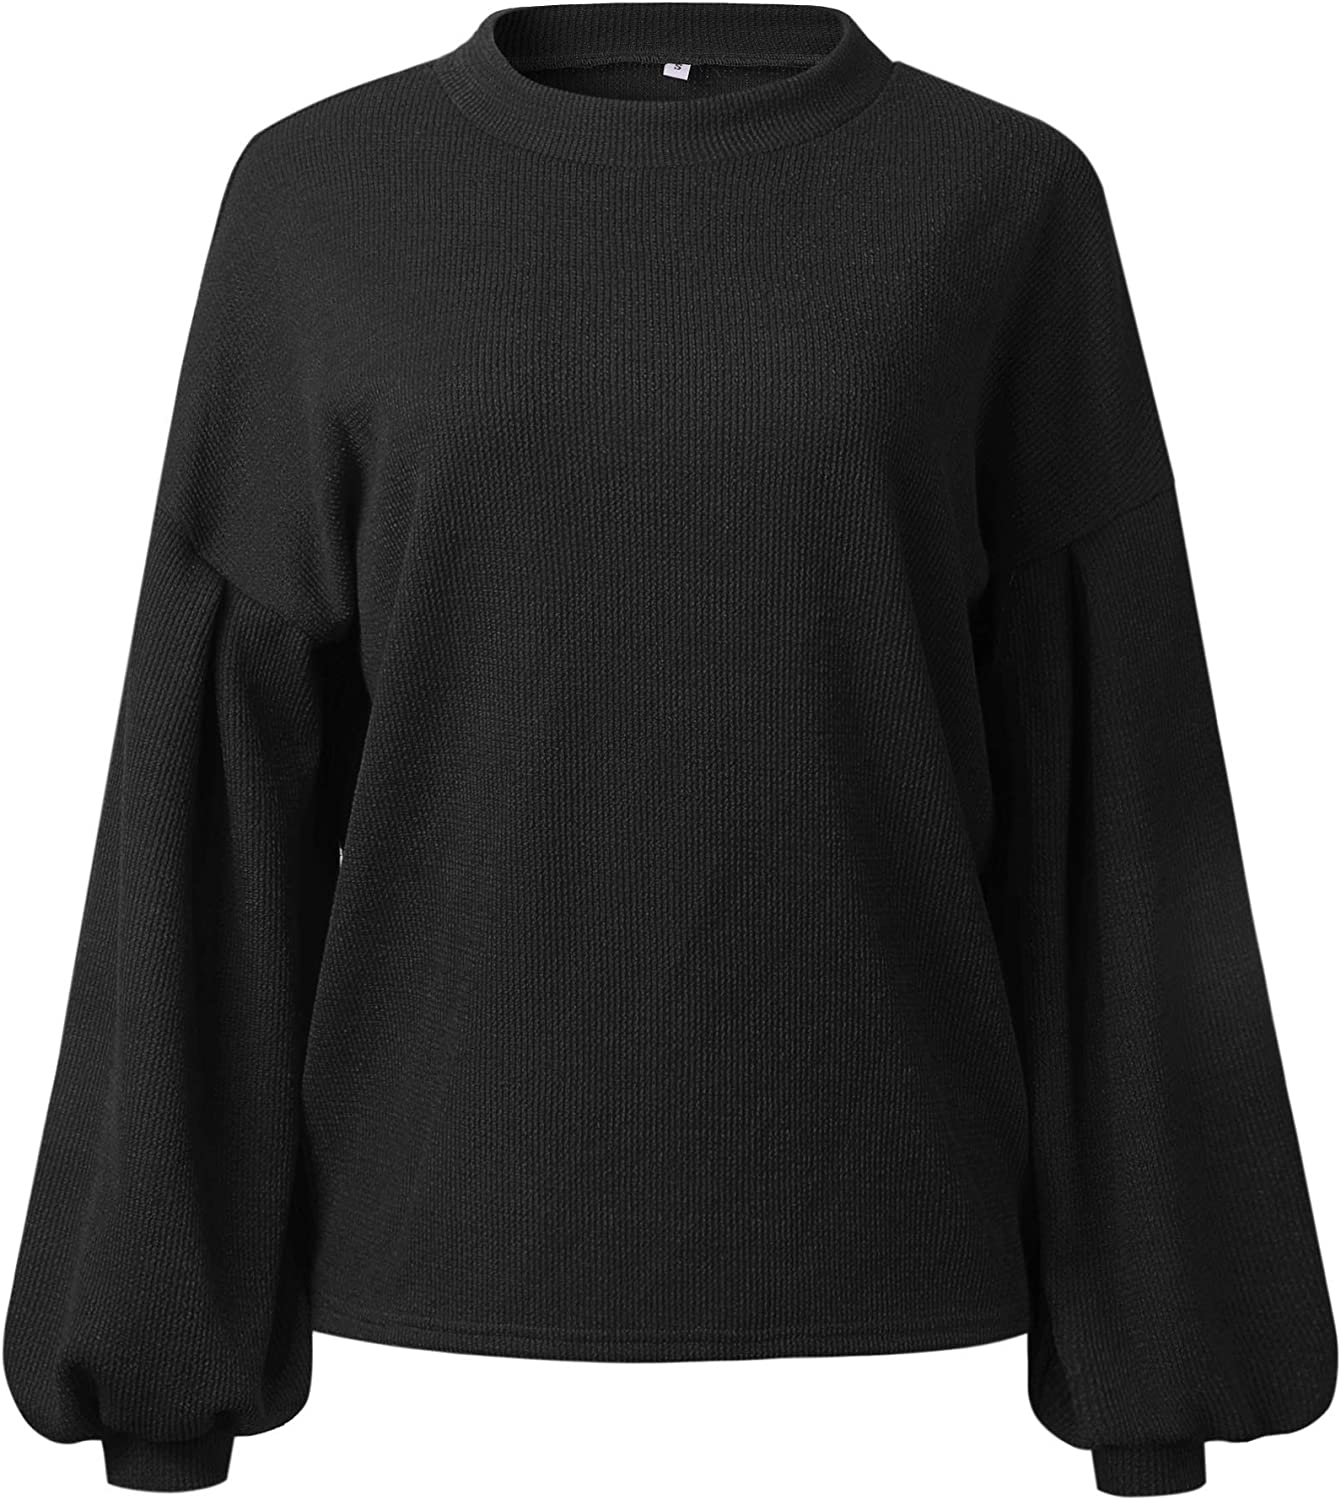 Women's Oversize Sweaters Loose Drop Shoulder